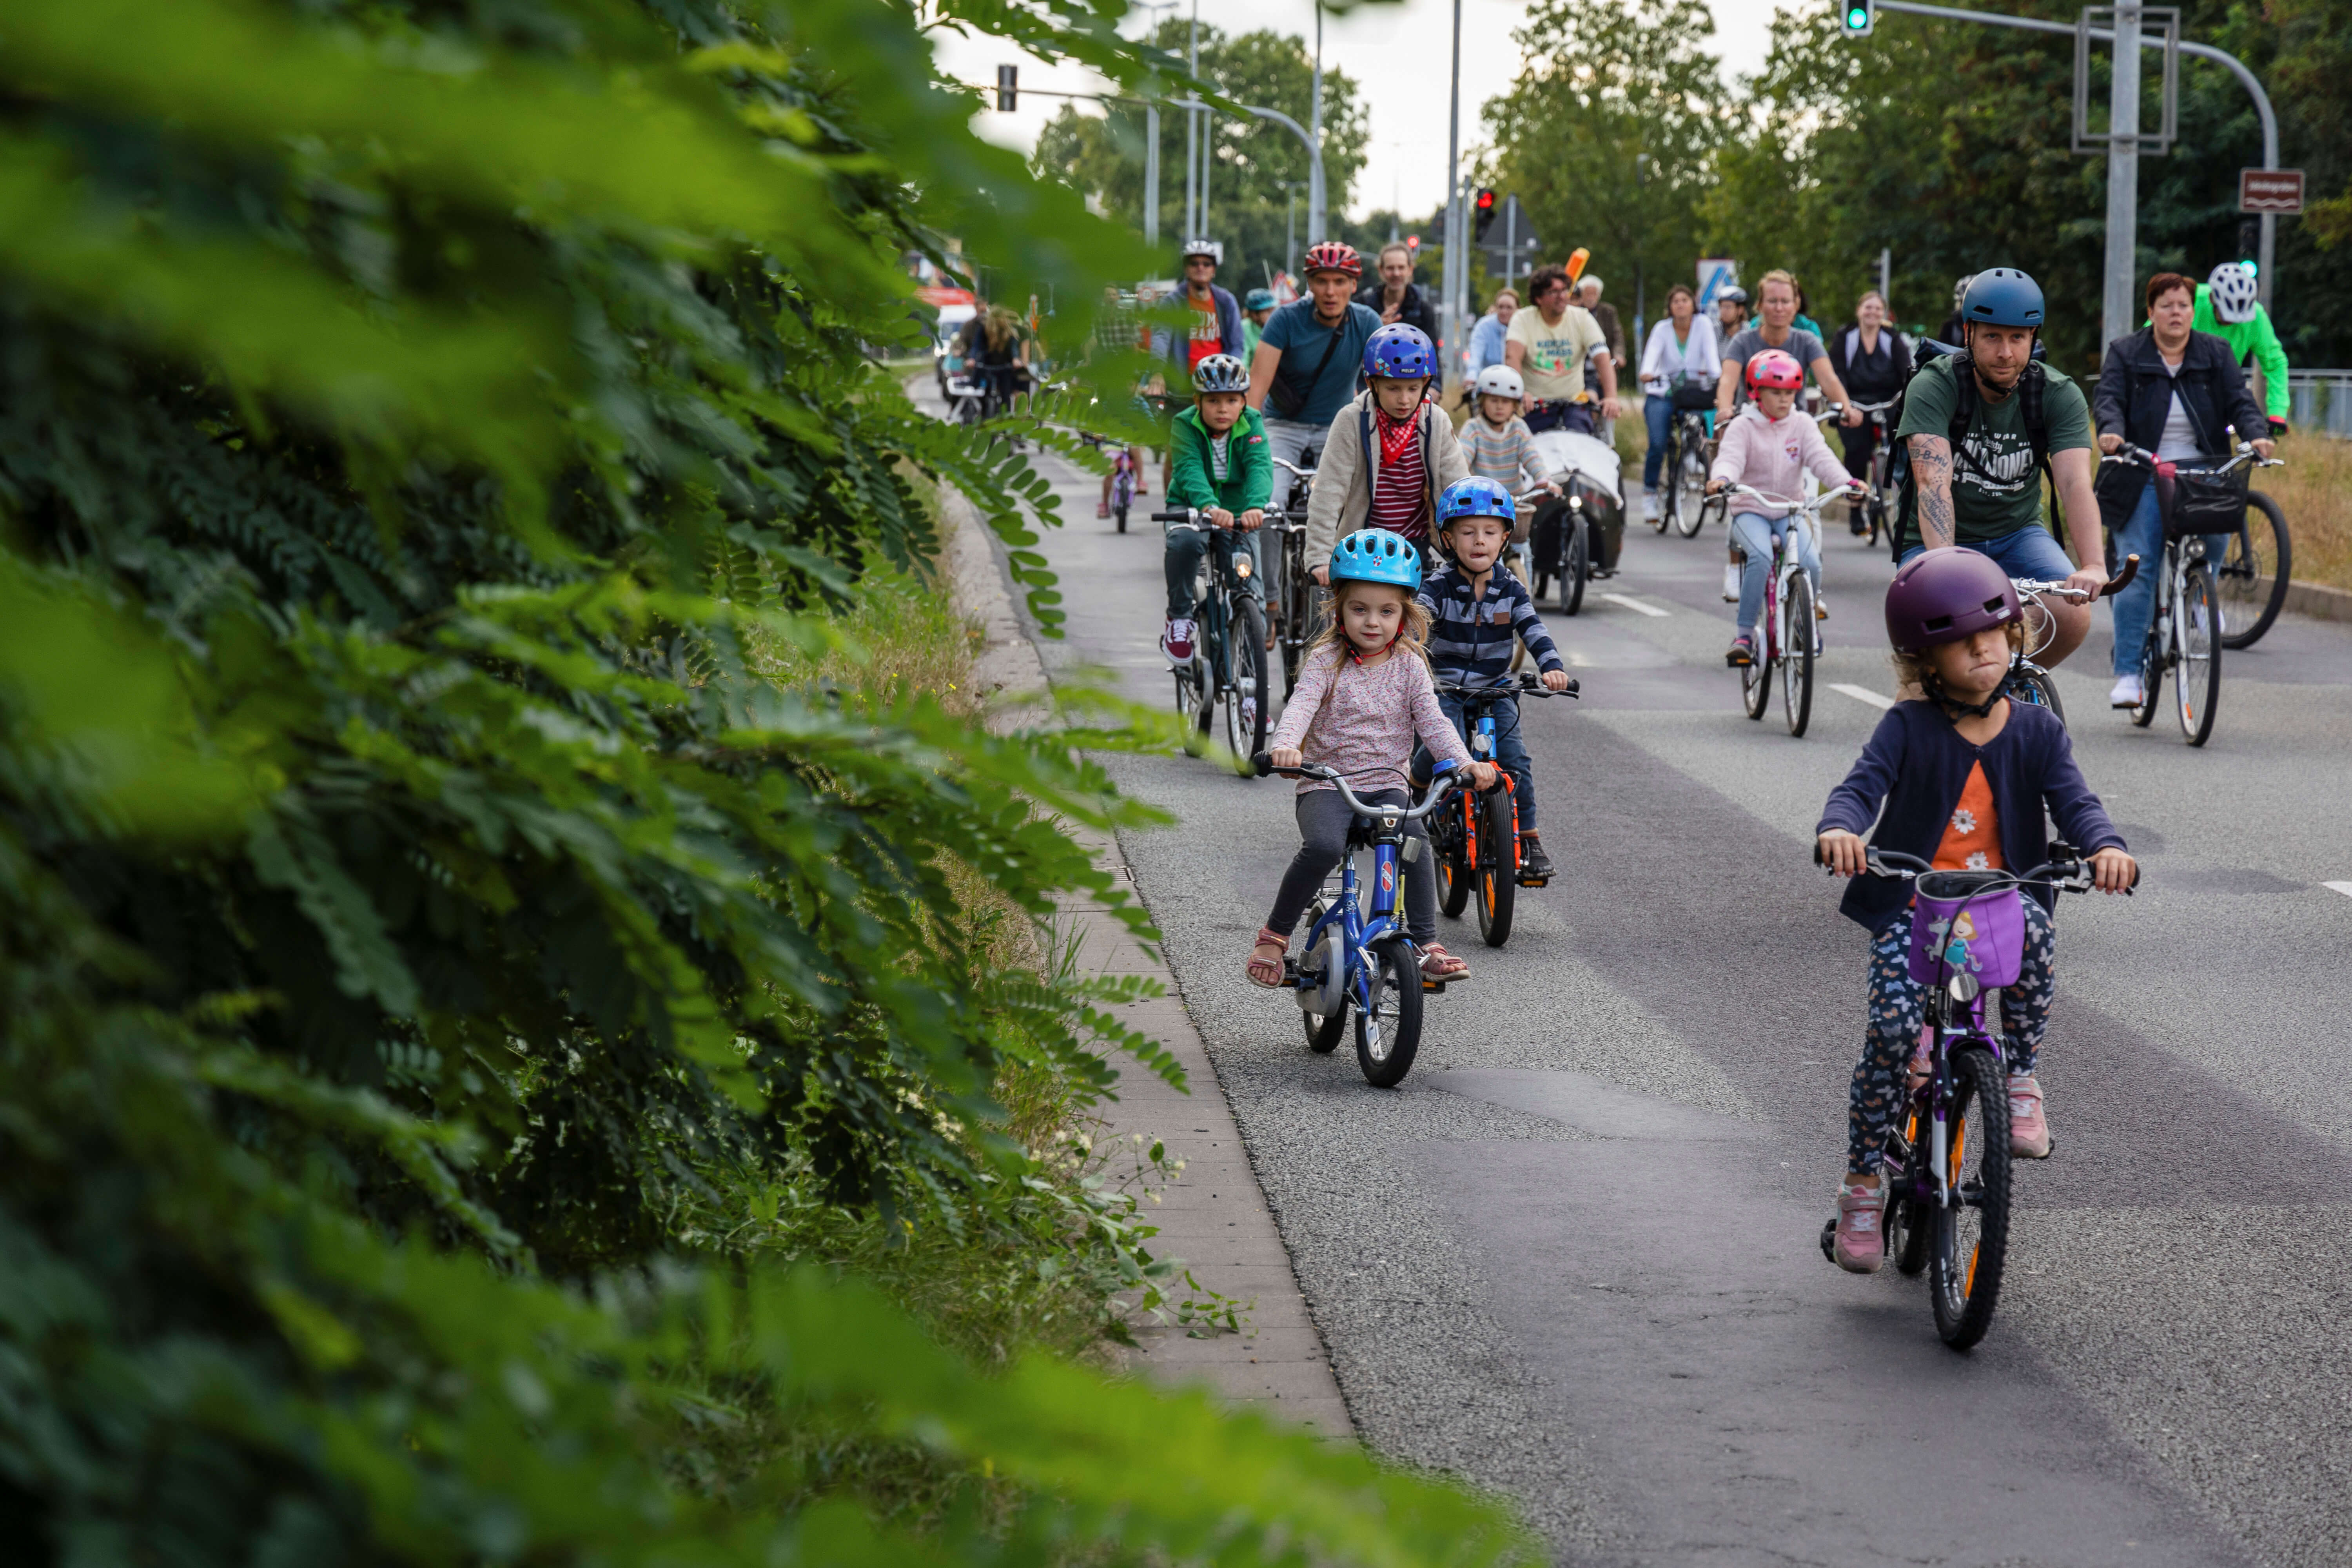 Kinder unterschiedlichen Alters und Erwachsene demonstrieren auf der Straße mit ihren Fahrrädern.